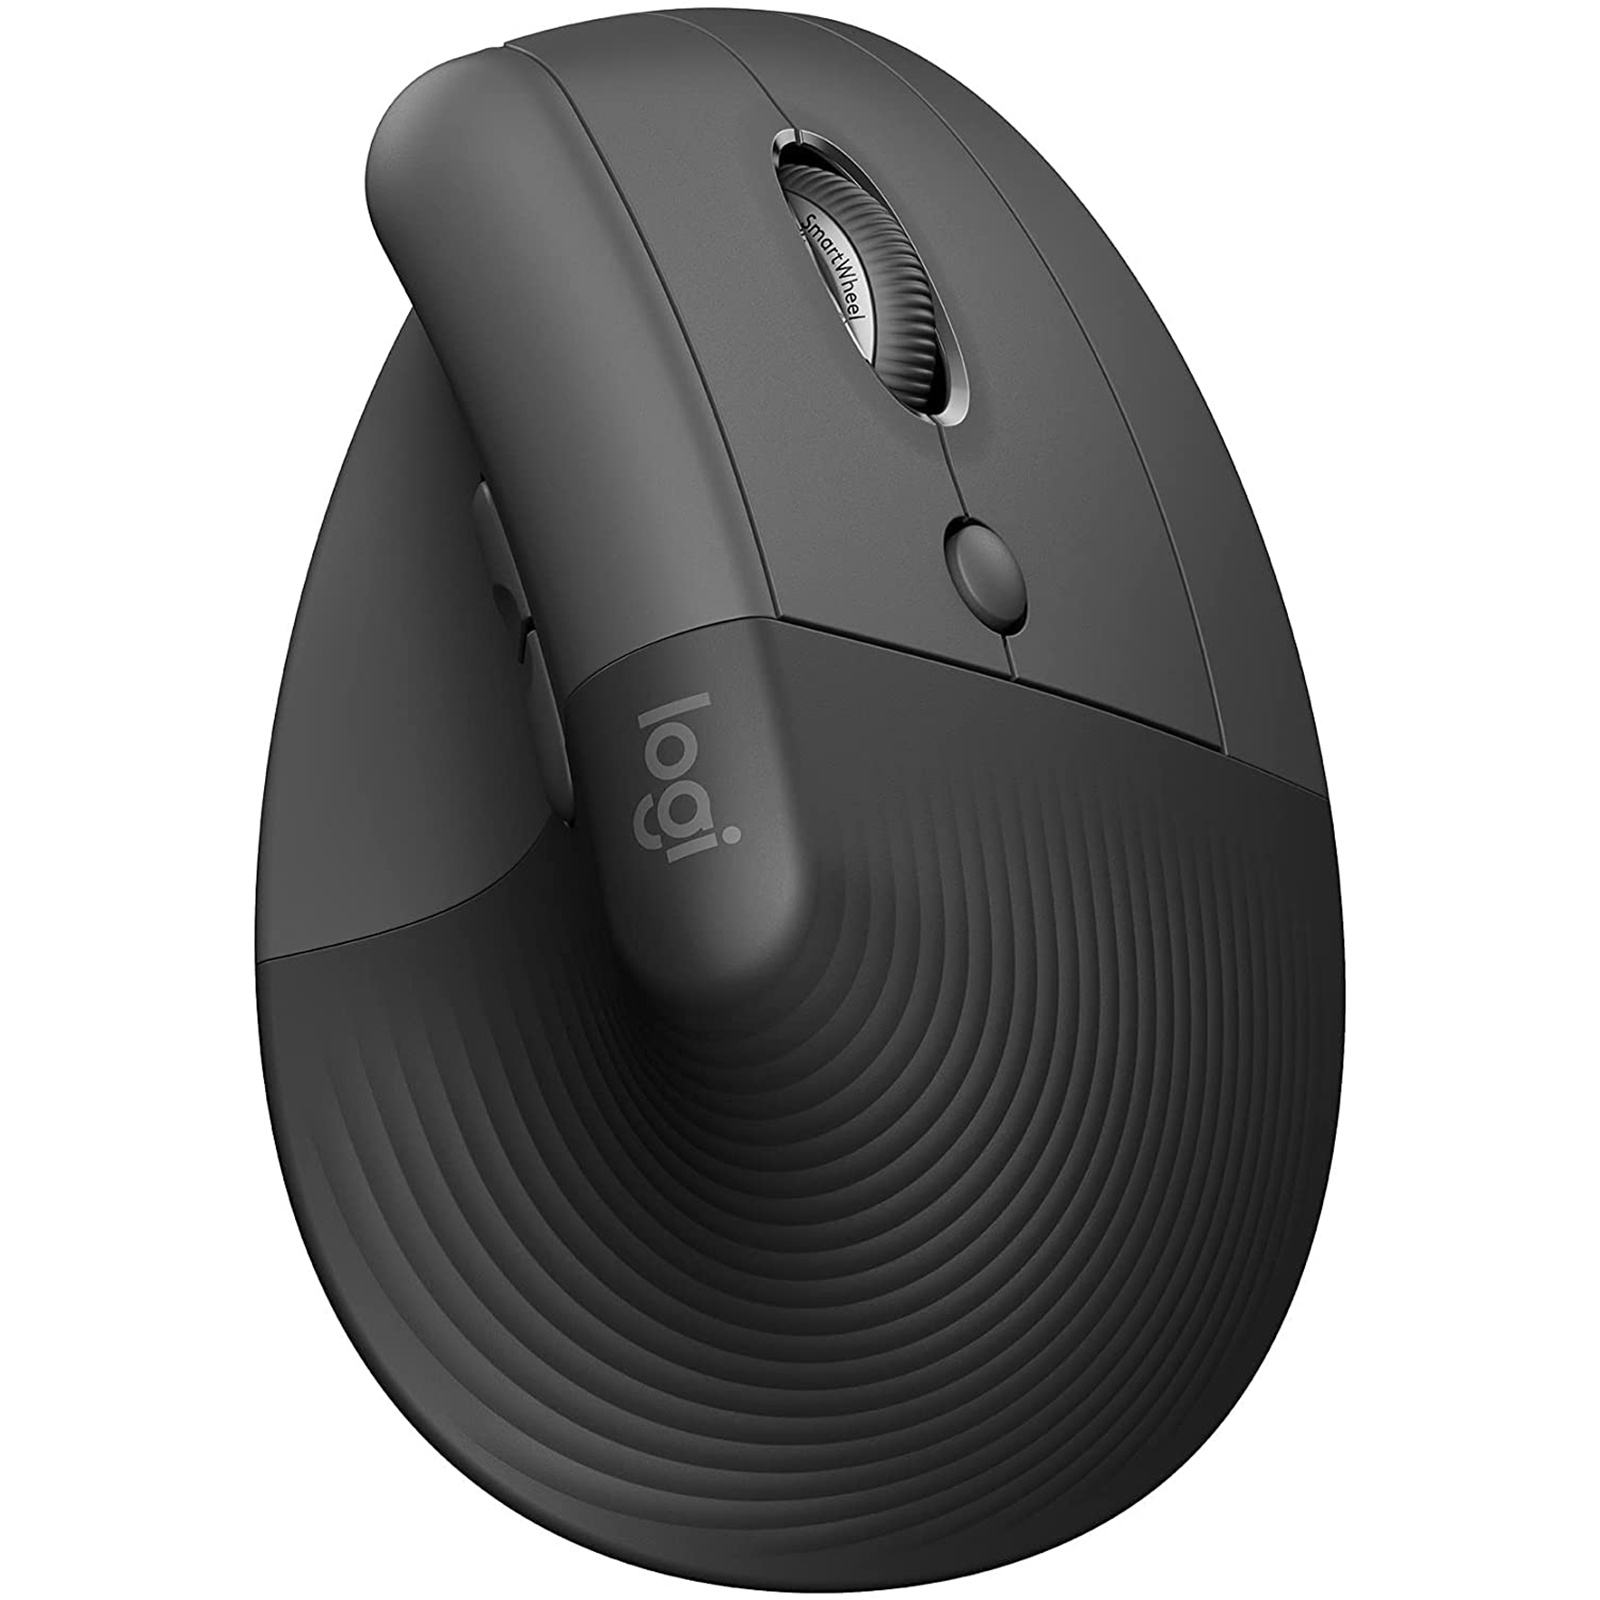 Buy the Logitech Lift Vertical Ergonomic Wireless Mouse - Graphite (  910-006479 ) online - PBTech.com/au